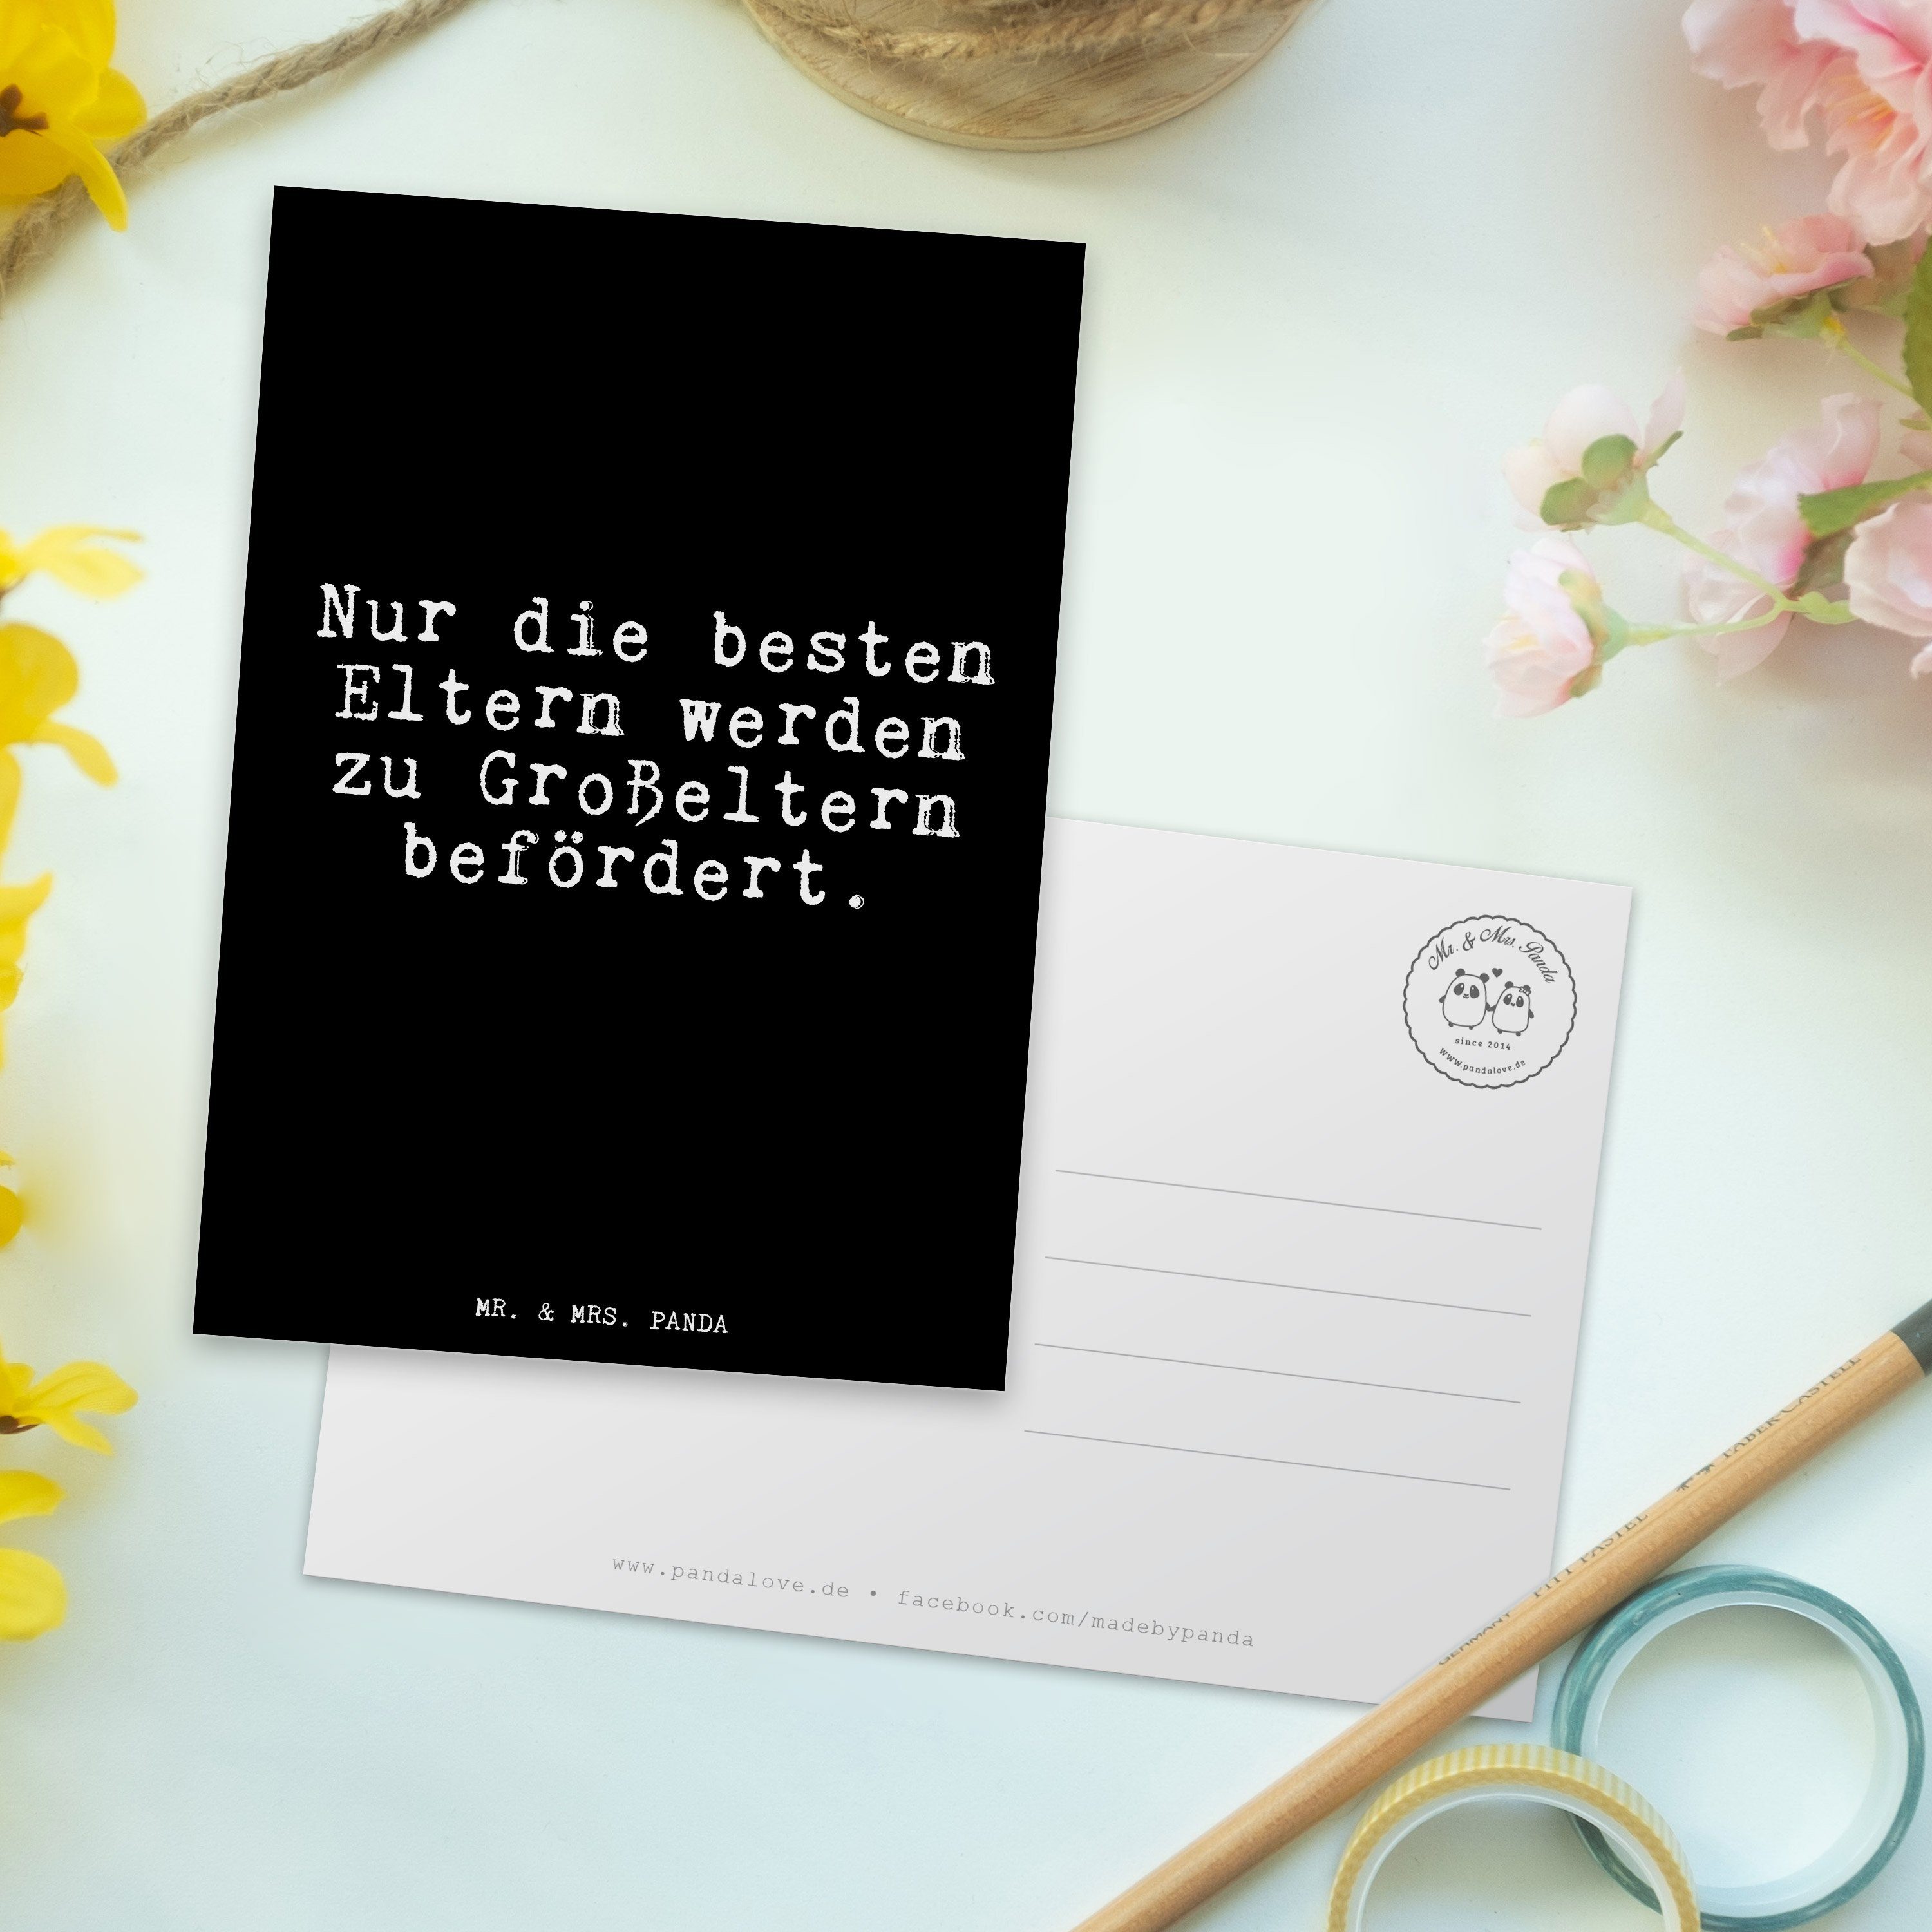 & - Geschenk, Mrs. besten - schöner Nur Gesche Schwarz Panda die Eltern... Postkarte Spruch, Mr.